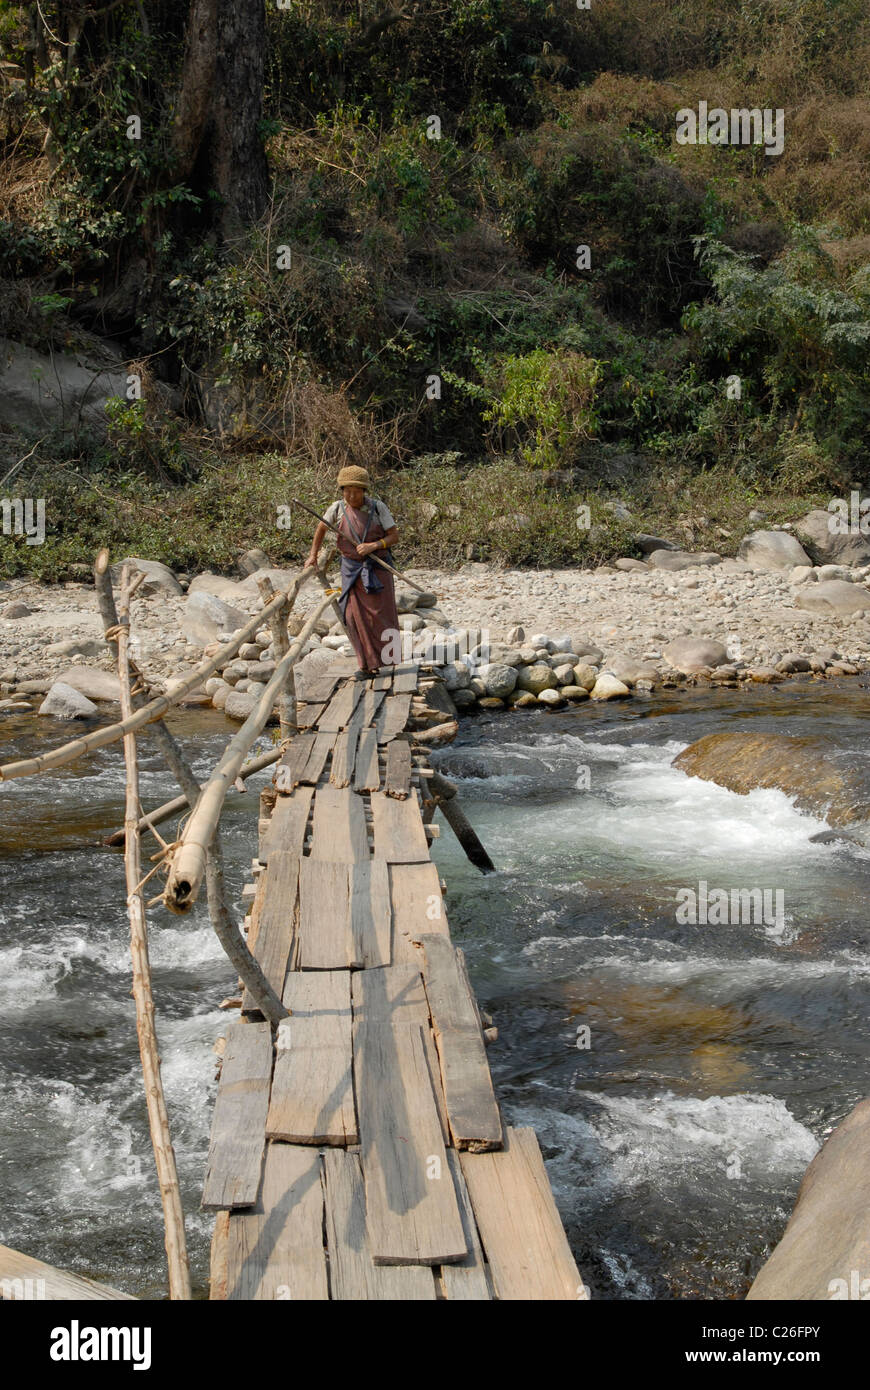 Bhutanese woman passing a dangerous footbridge at Lingmethang (near Mongar), Bhutan Stock Photo